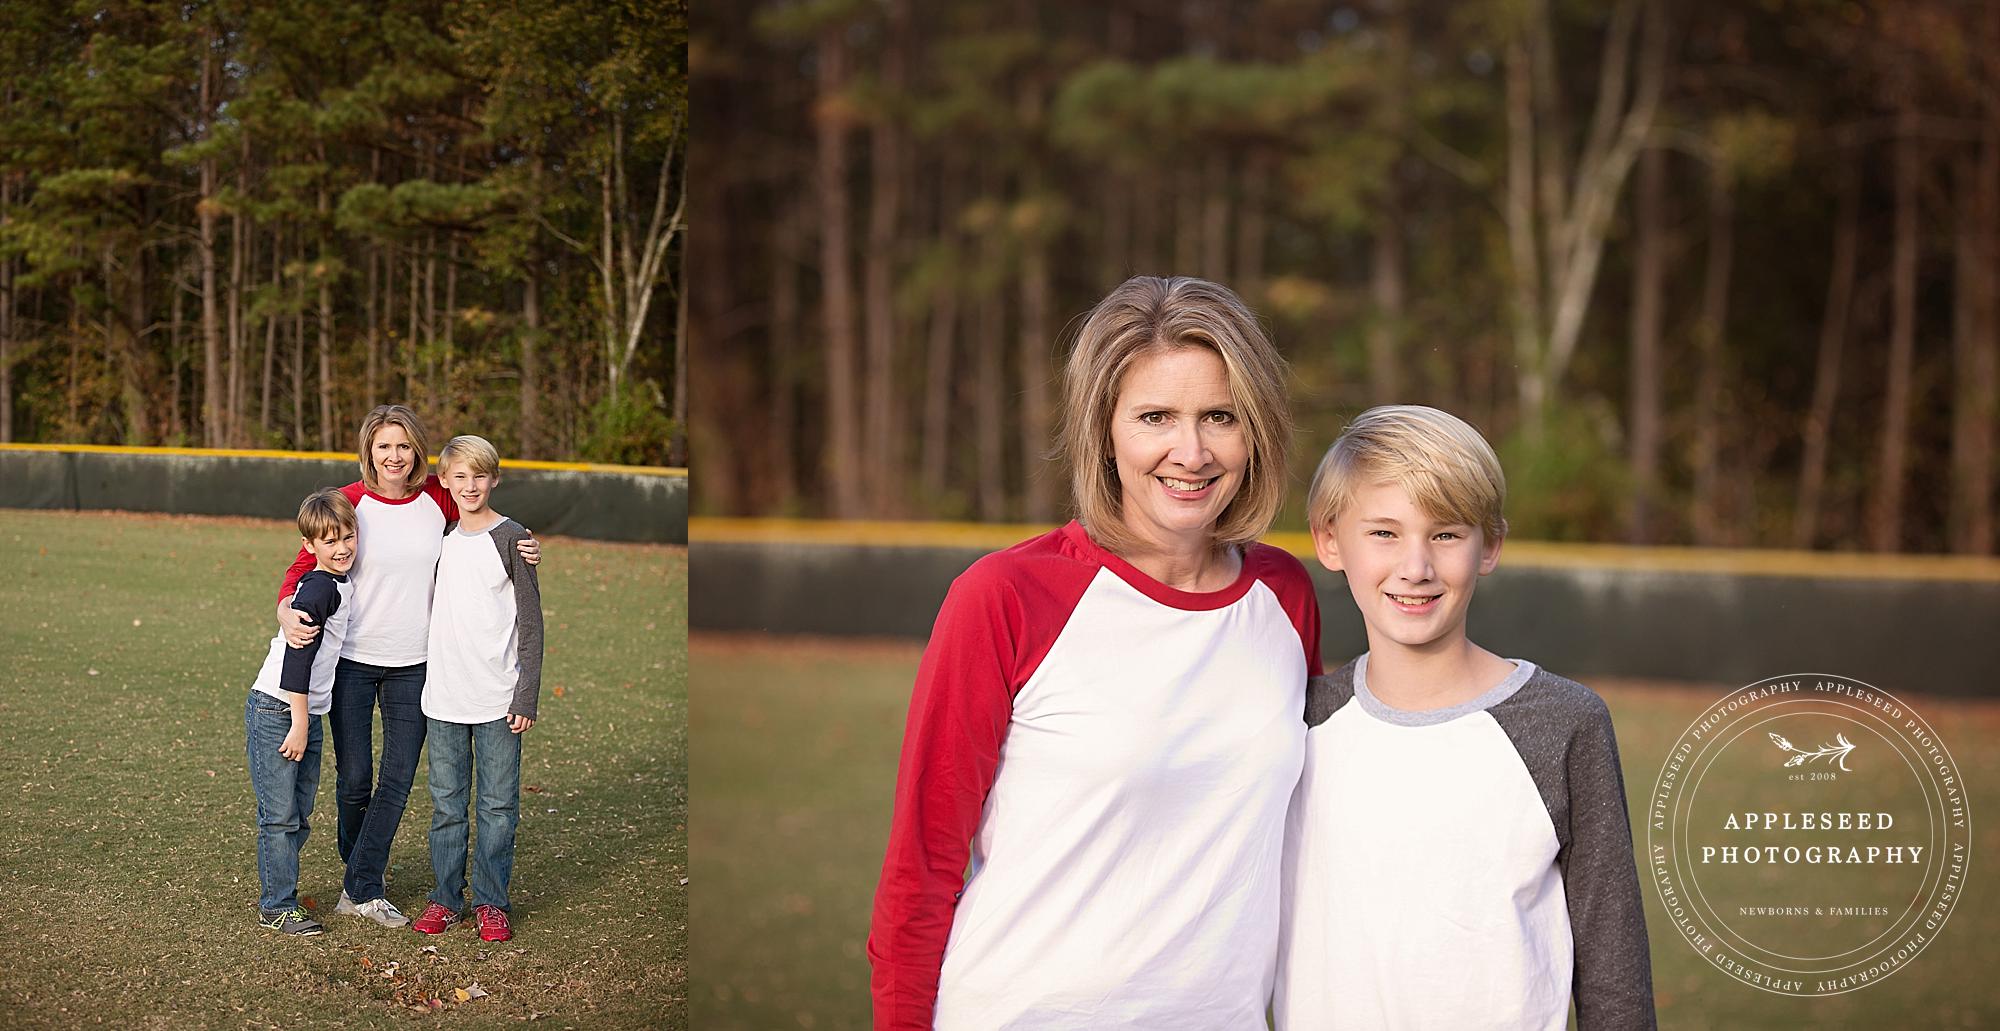 Atlanta Family Photographer | Baseball Field Session